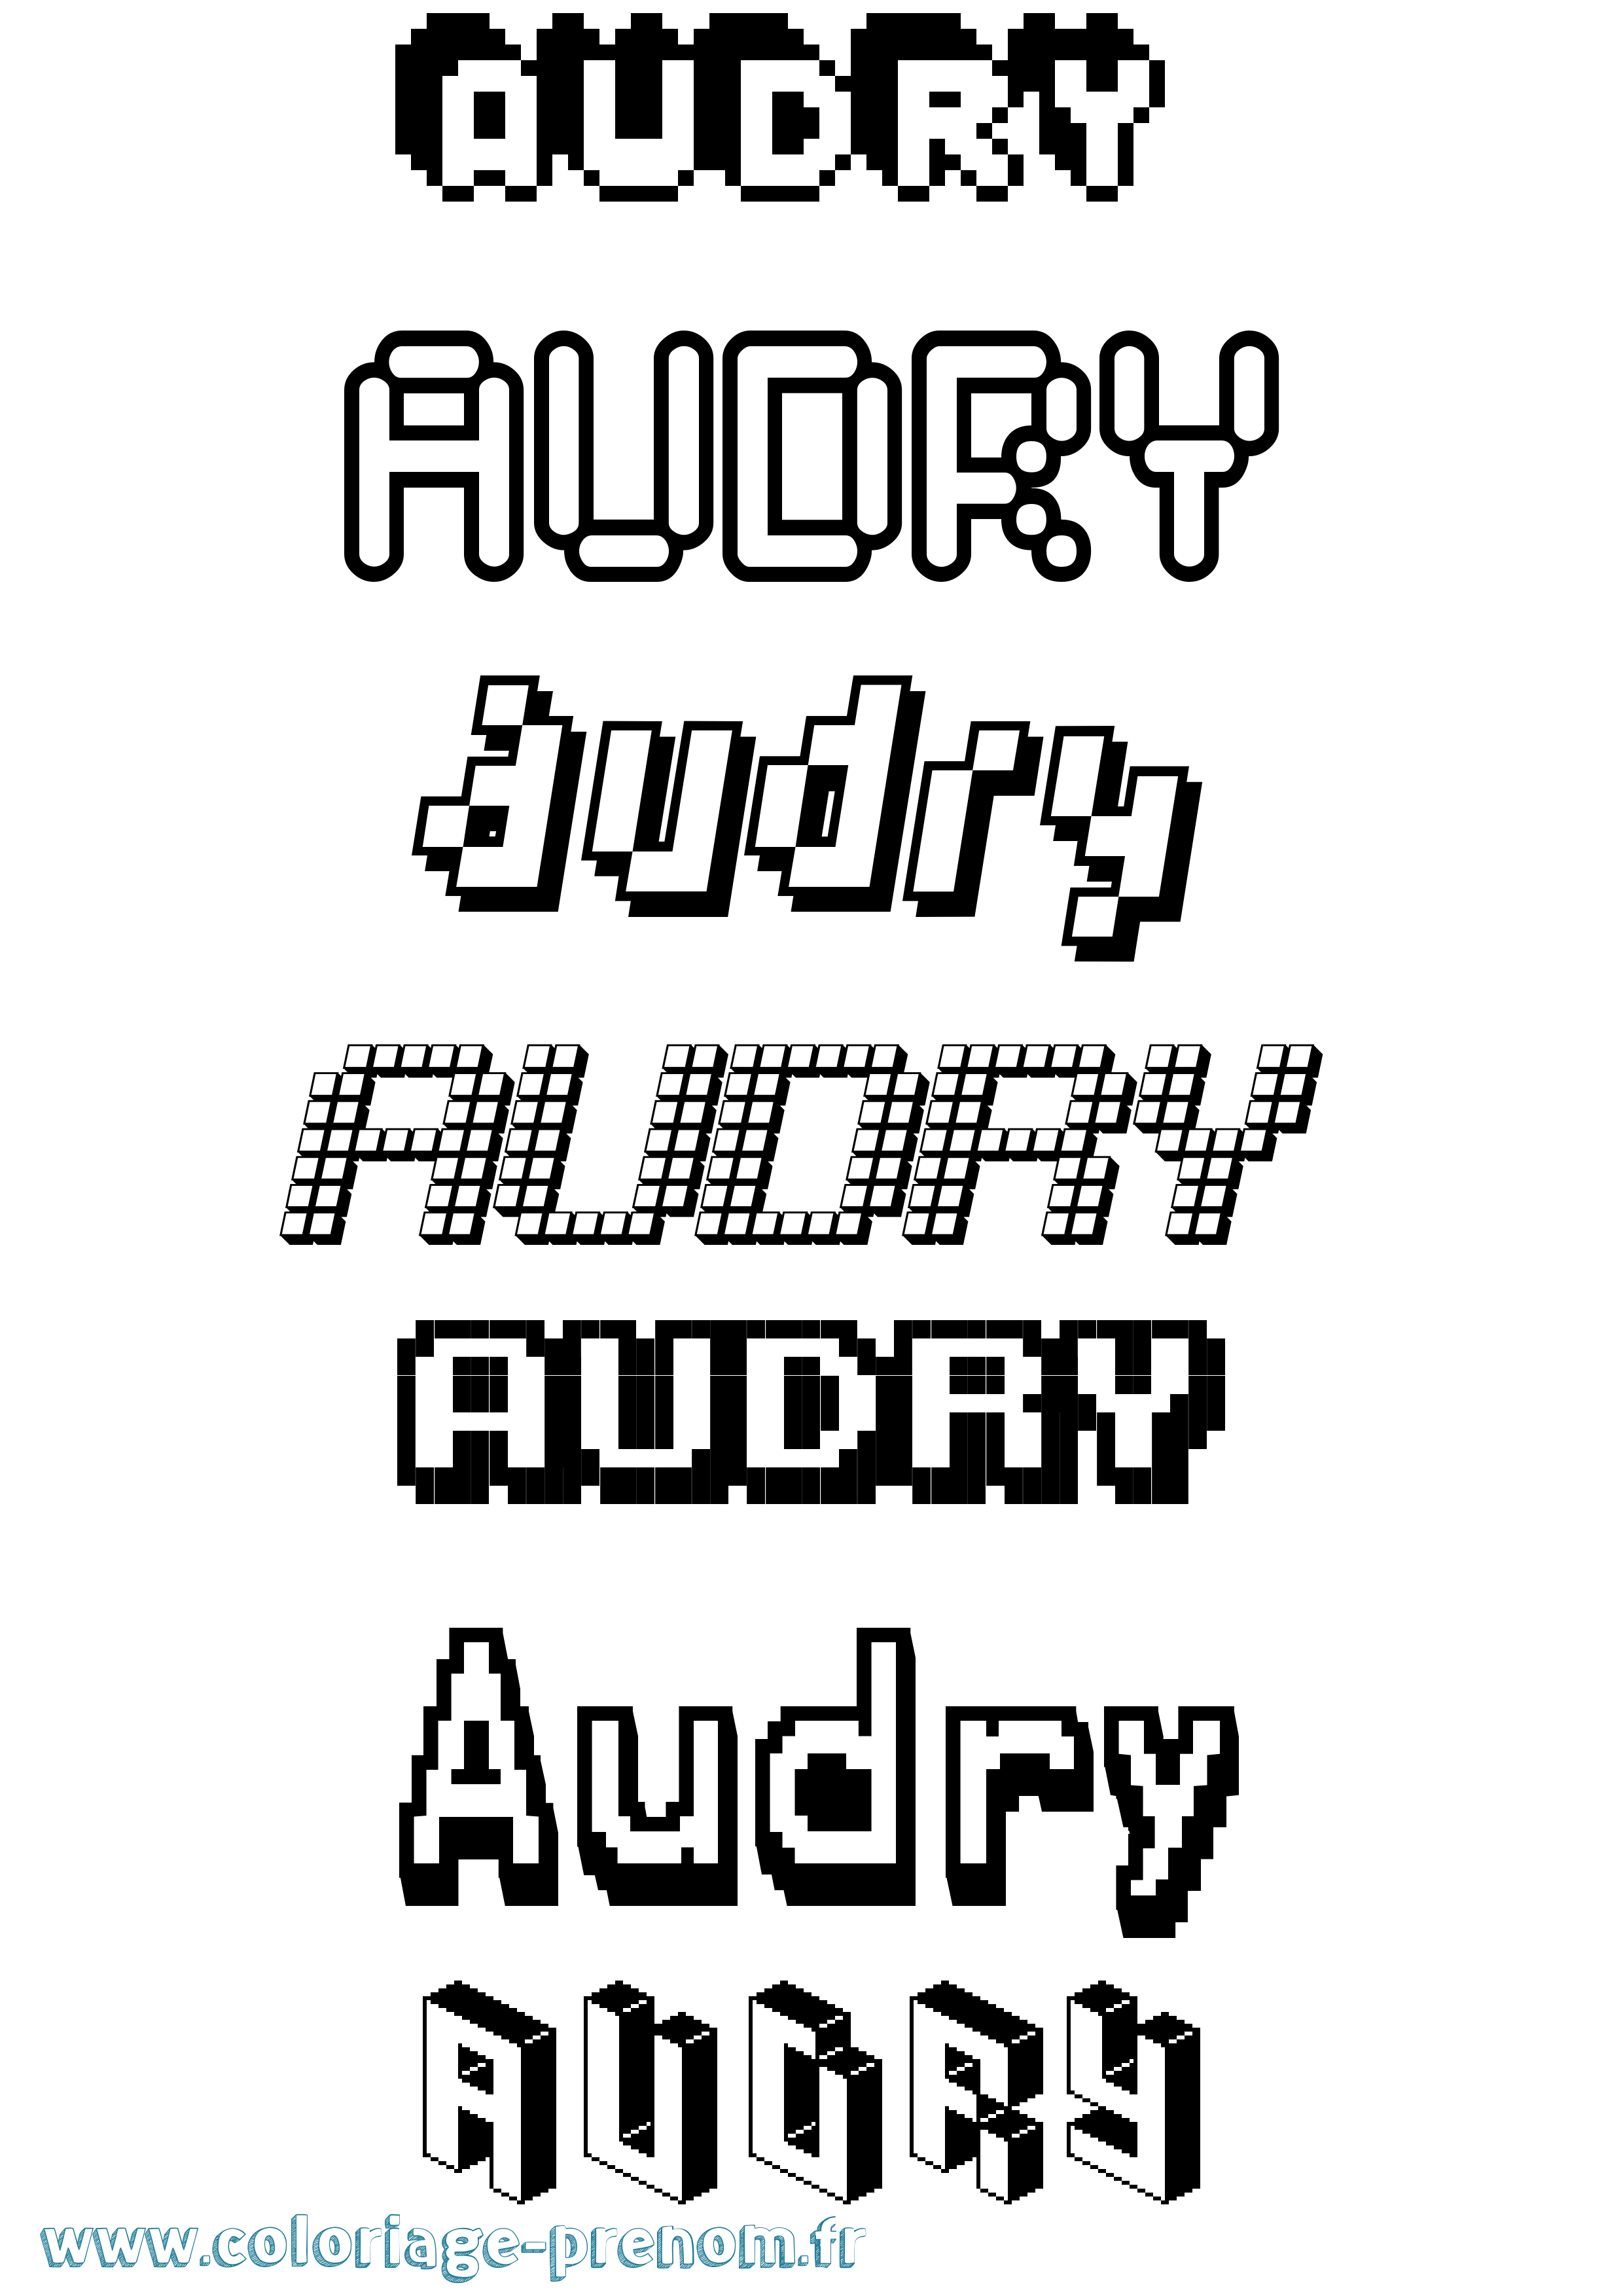 Coloriage prénom Audry Pixel